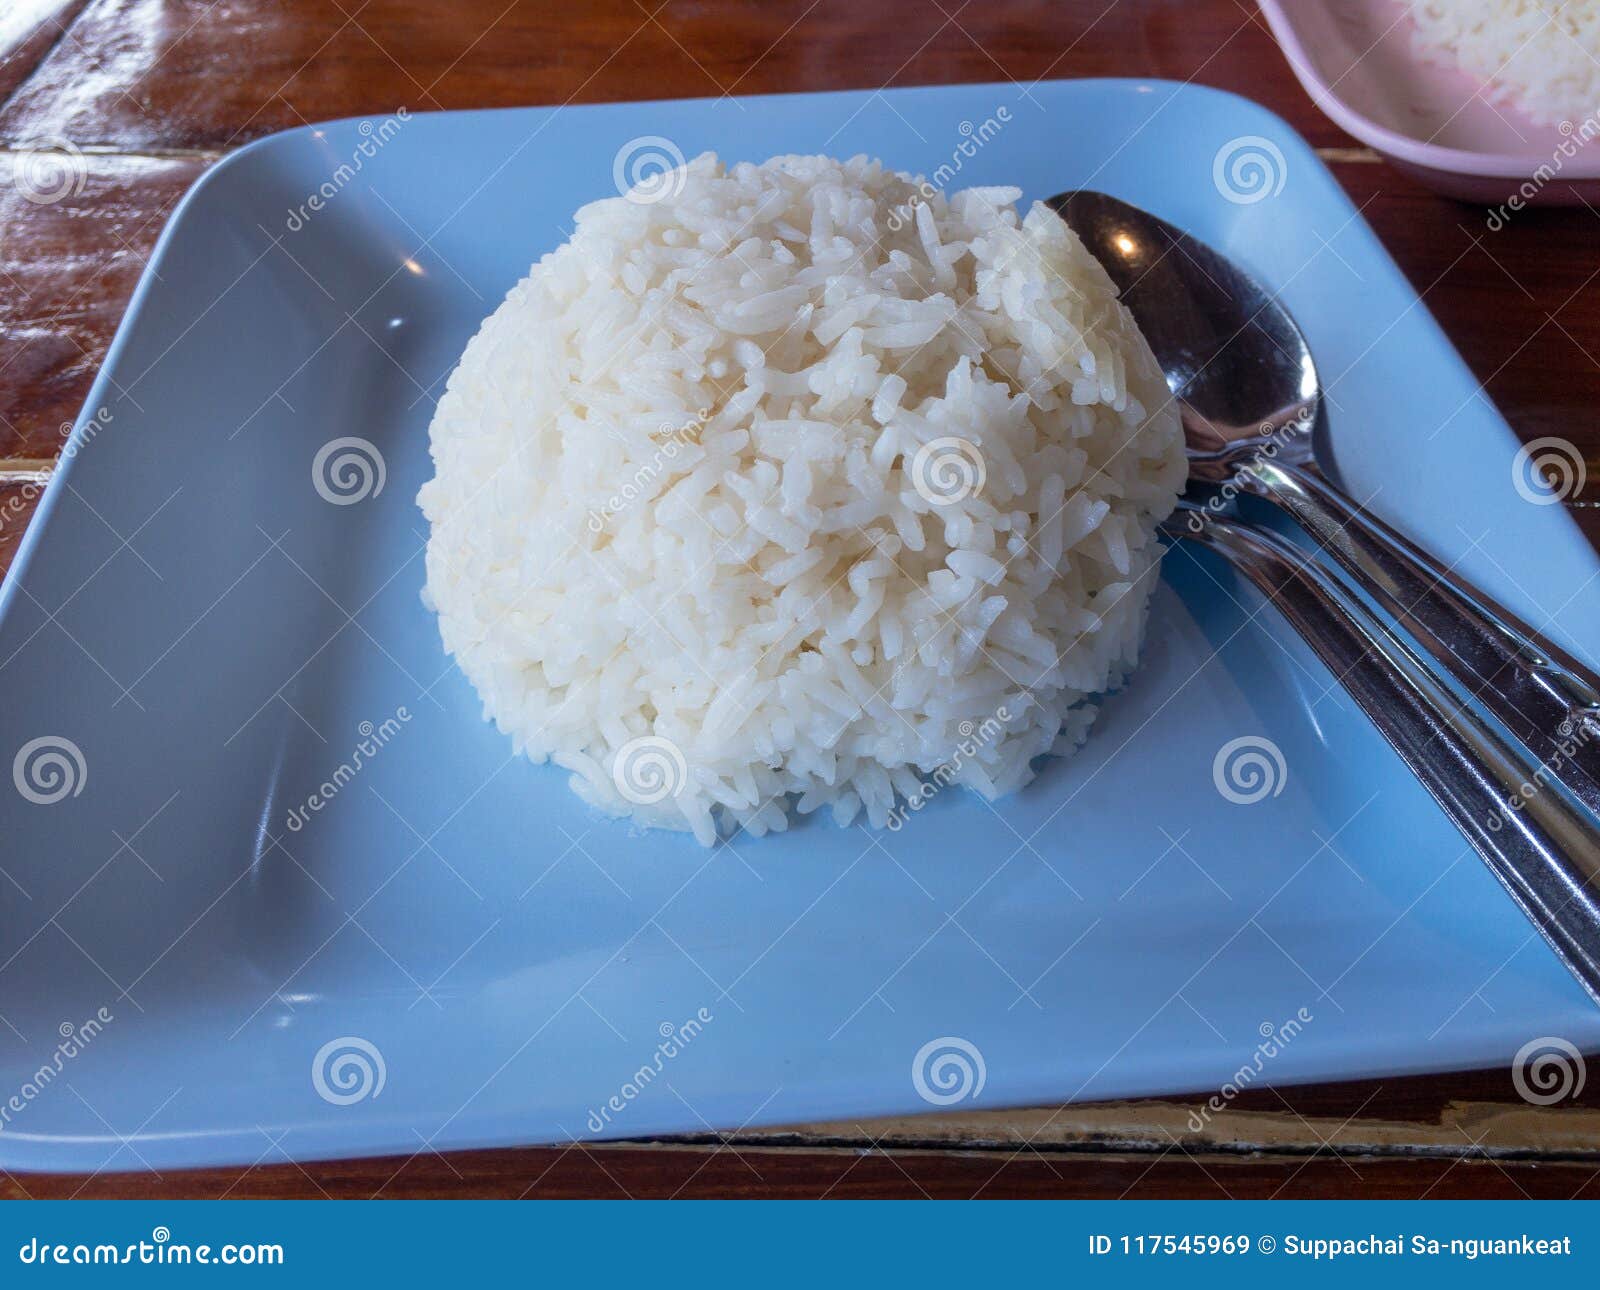 arroz-blanco-cocido-al-vapor-en-cuenco-de-madera-117545969.jpg